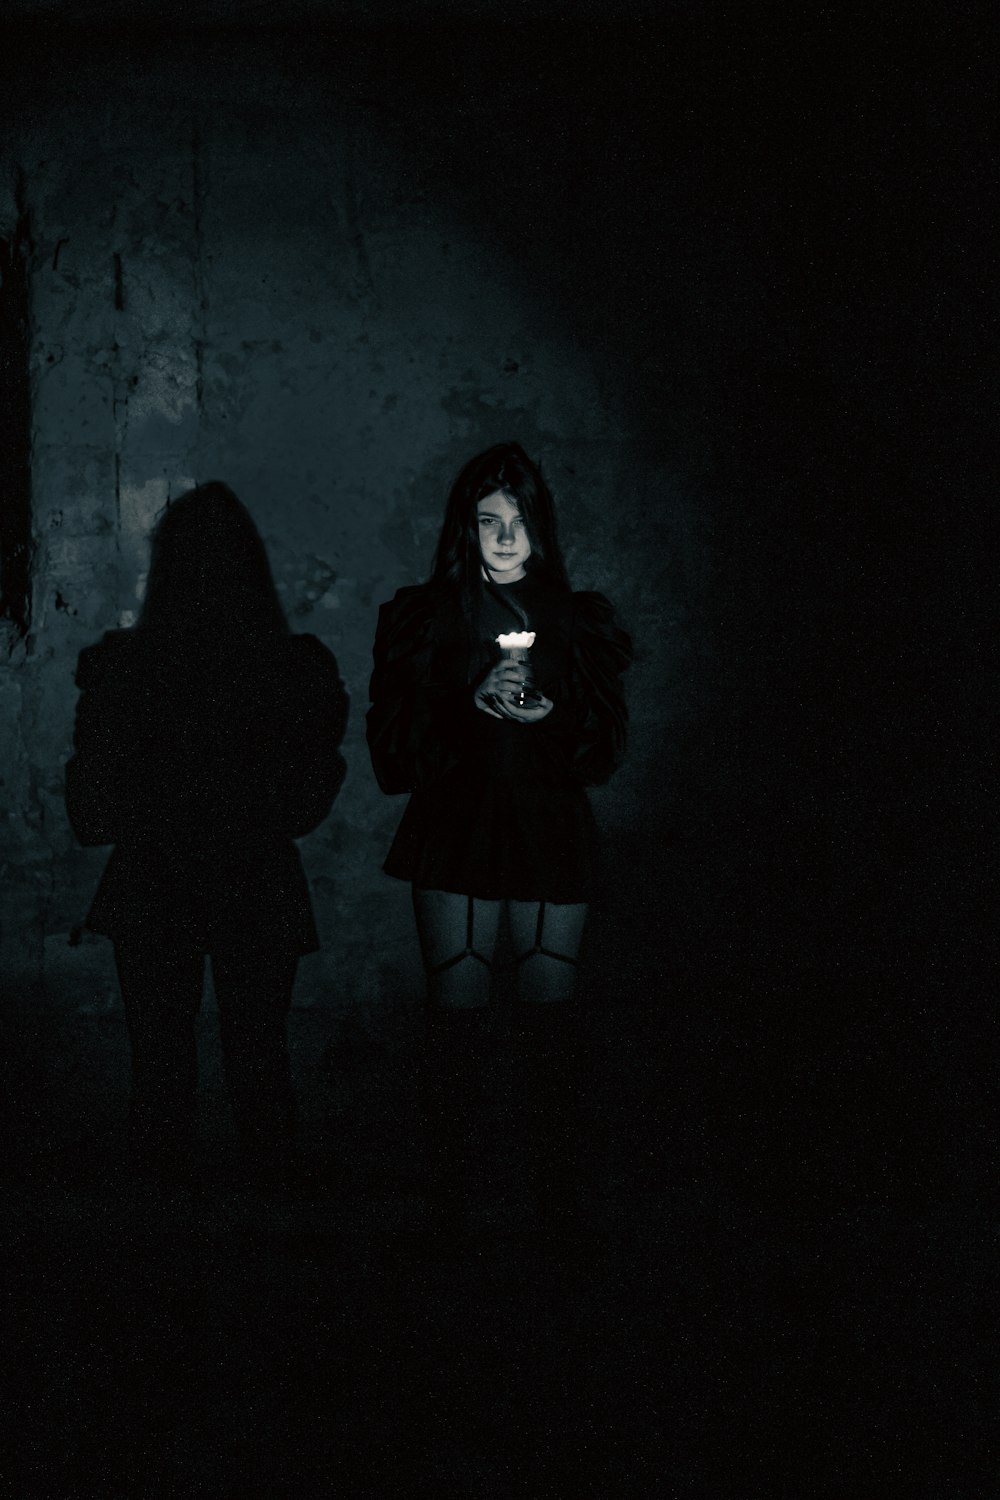 Una donna in piedi nel buio con in mano un telefono cellulare